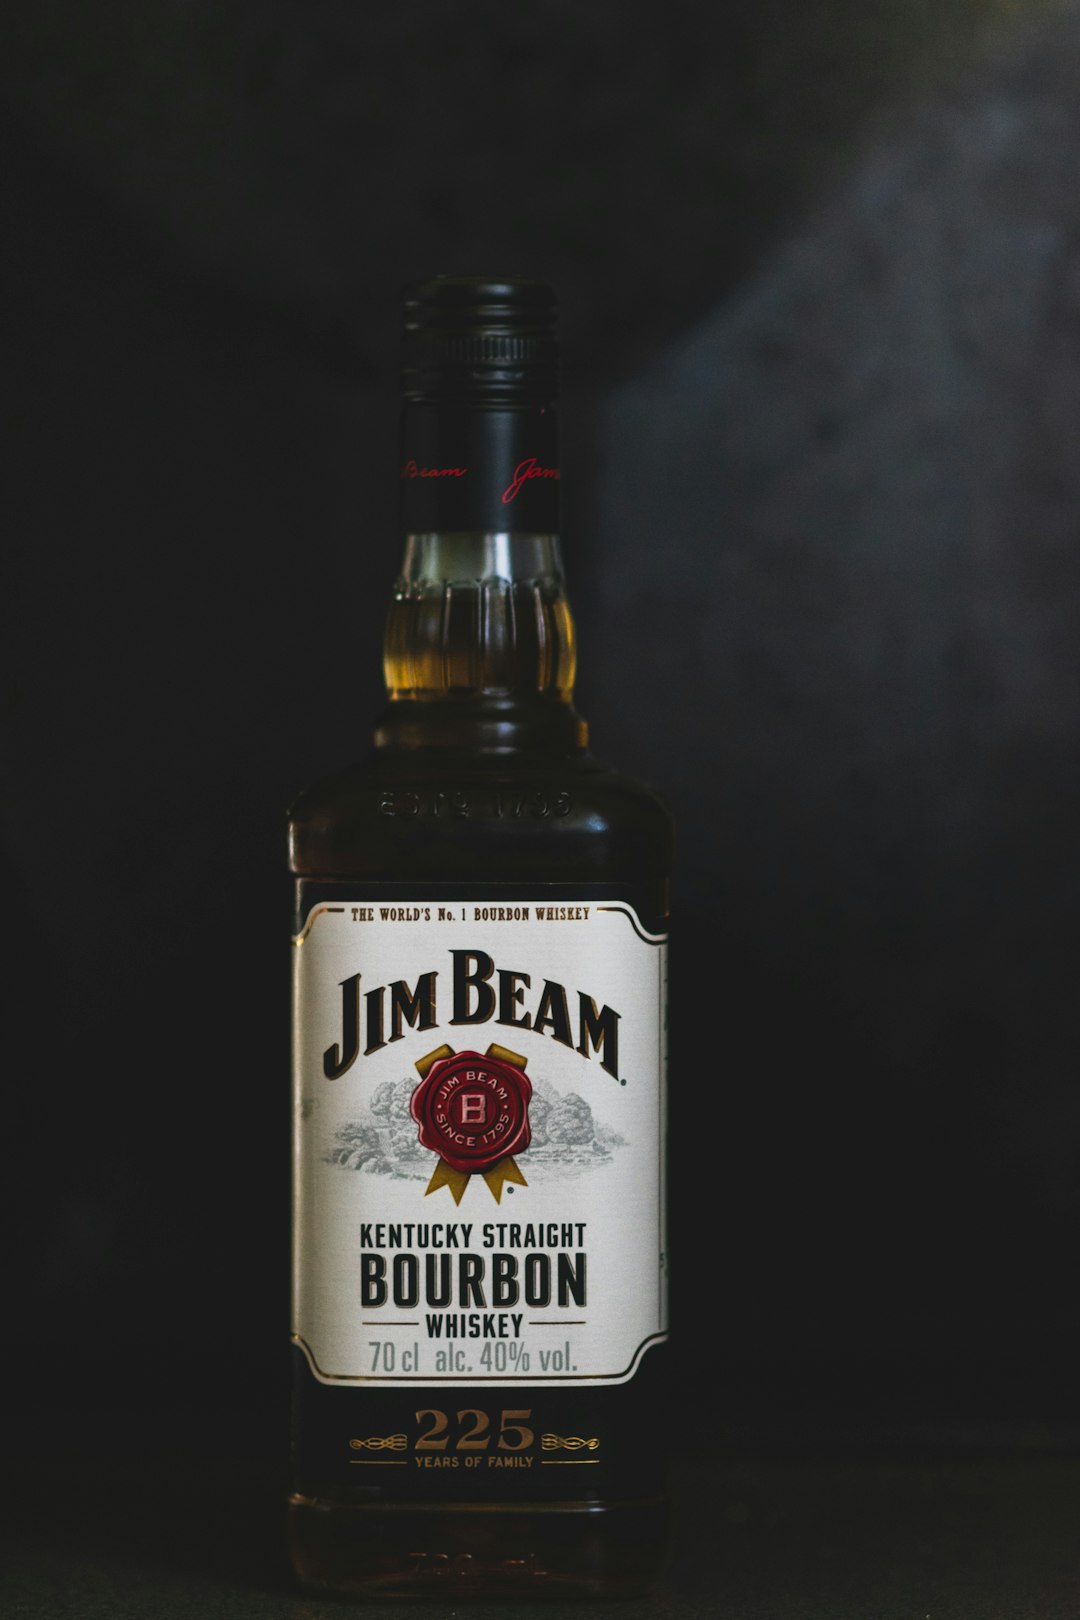 Jim Beam, Kentucky Straight Bourbon Whiskey